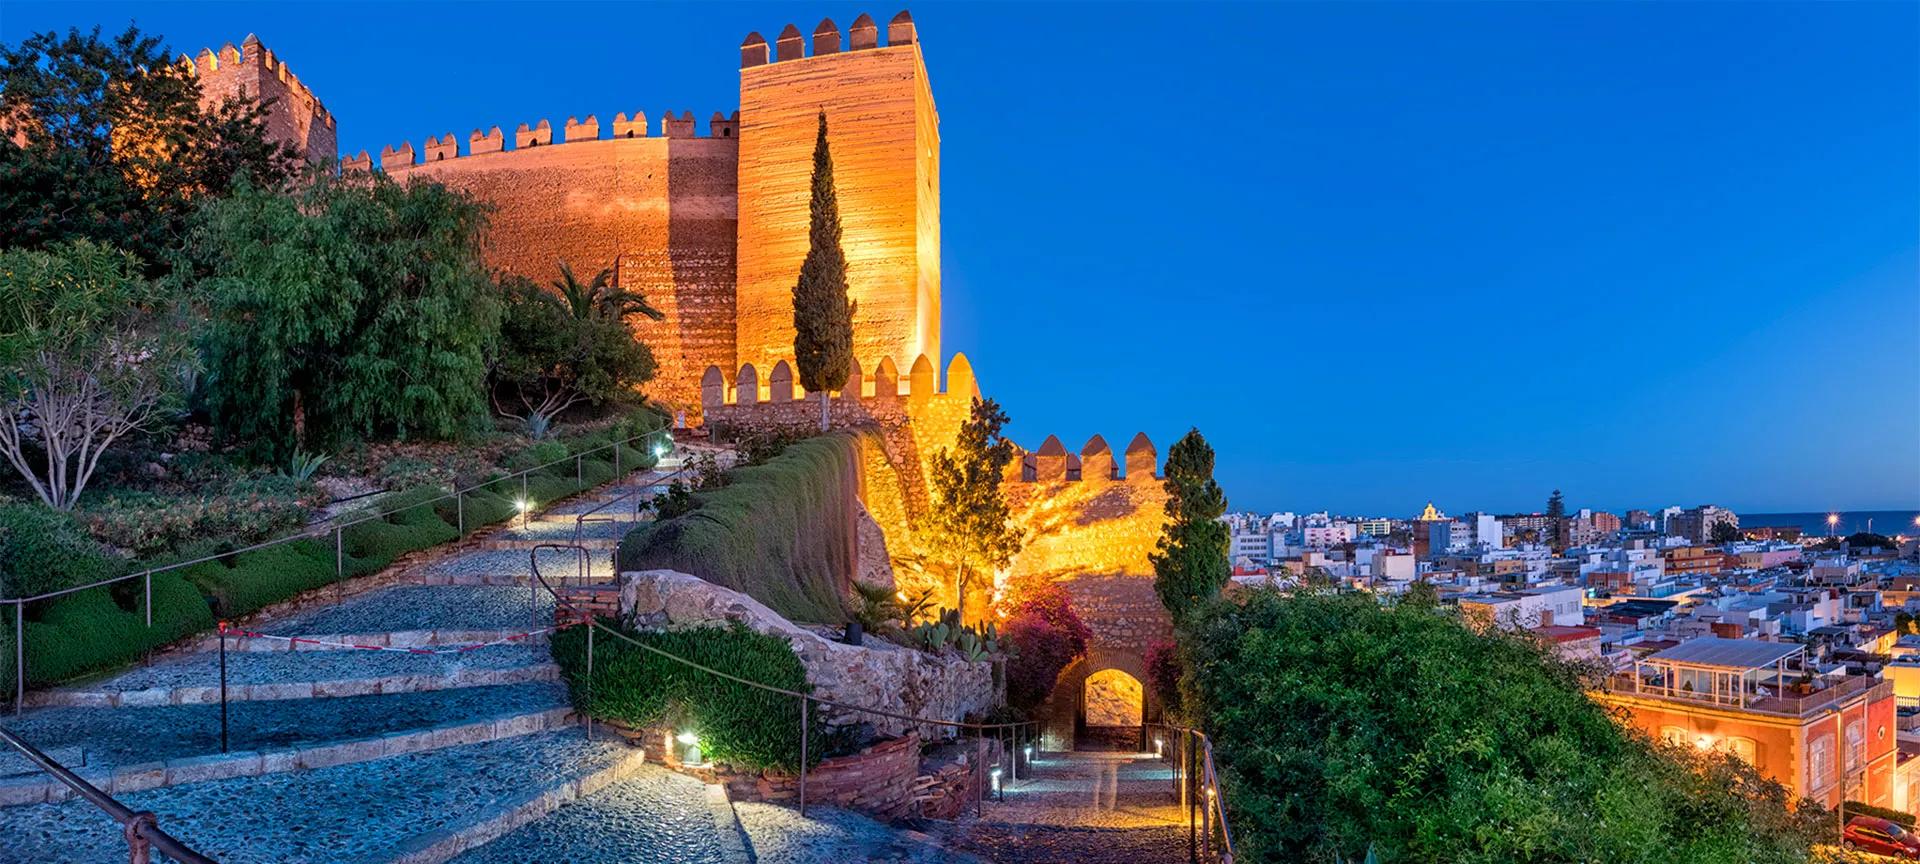 alcazaba almeria llegar en taxi - Cuándo se construyó la Alcazaba de Almería